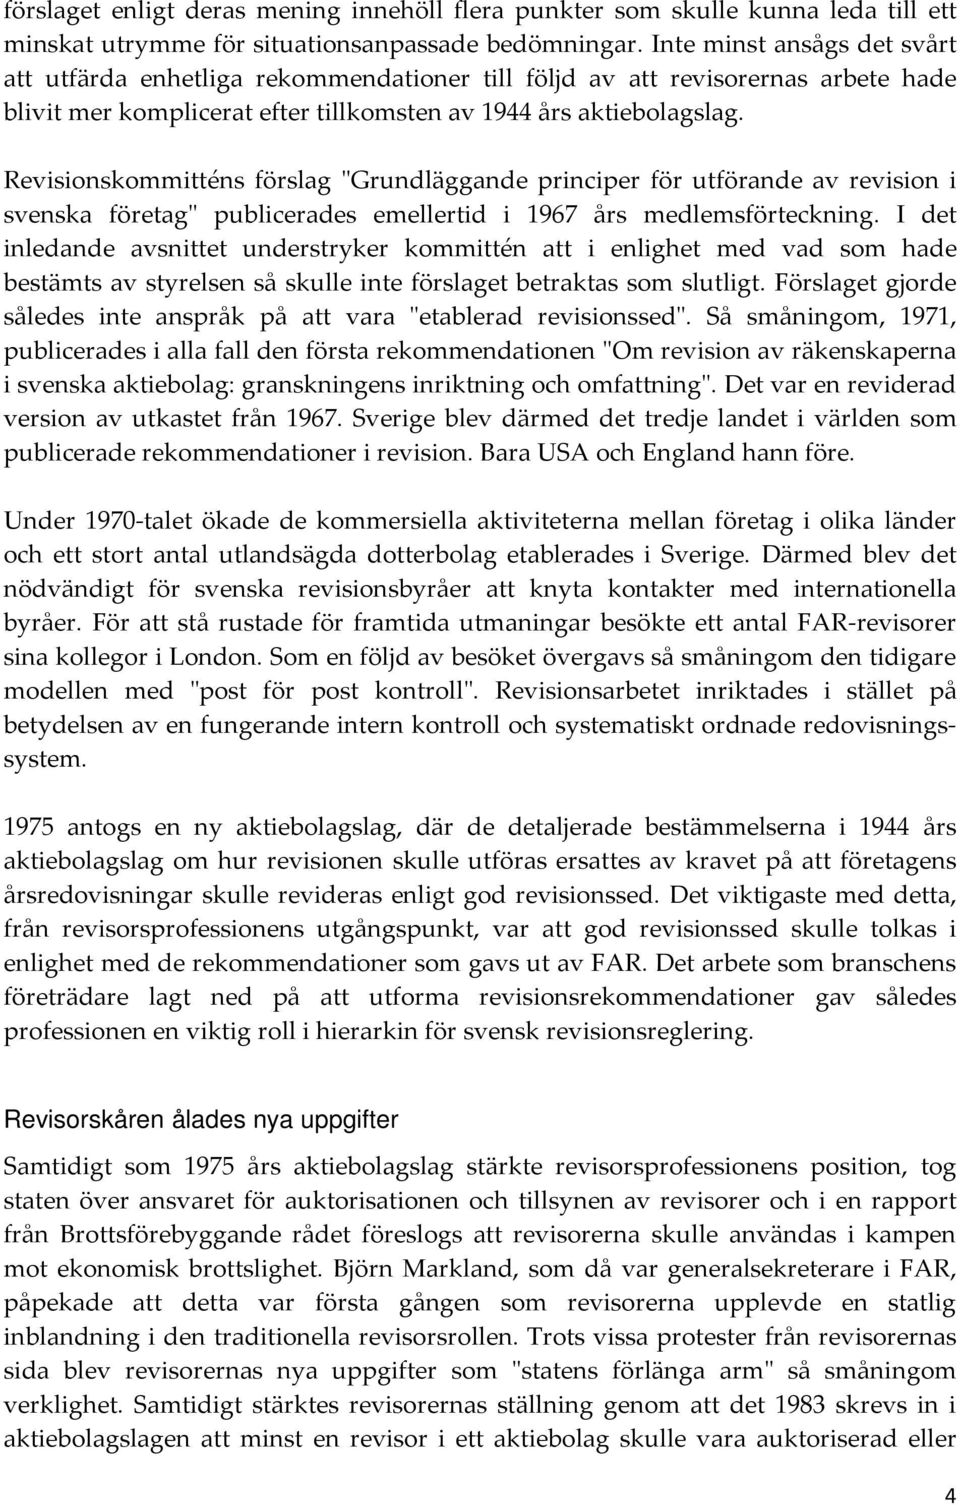 Revisionskommitténs förslag "Grundläggande principer för utförande av revision i svenska företag" publicerades emellertid i 1967 års medlemsförteckning.